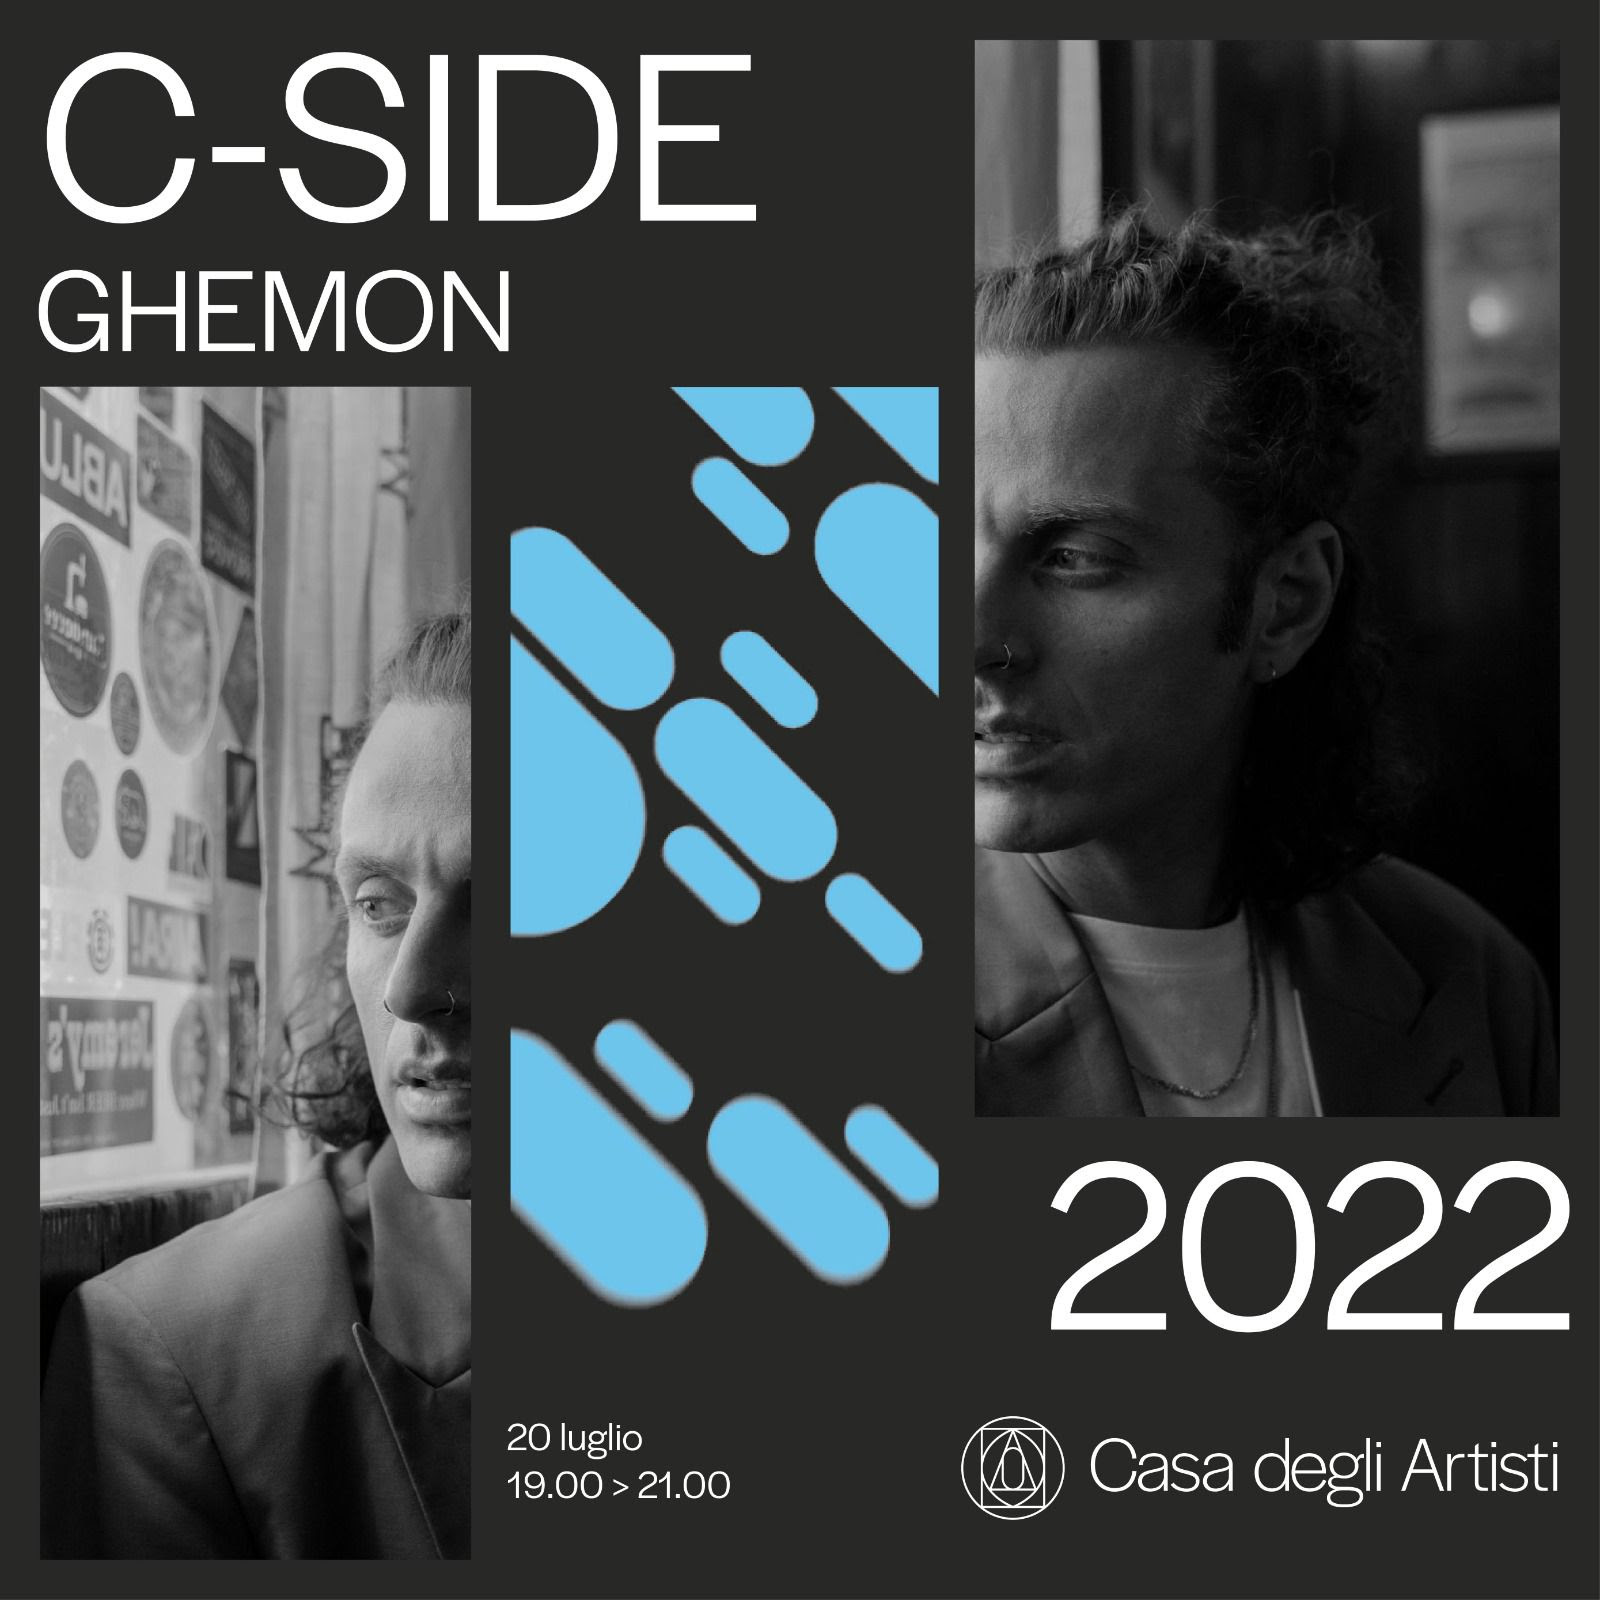 La C-side di Ghemon il 20 luglio presso la Casa degli artisti di Milano